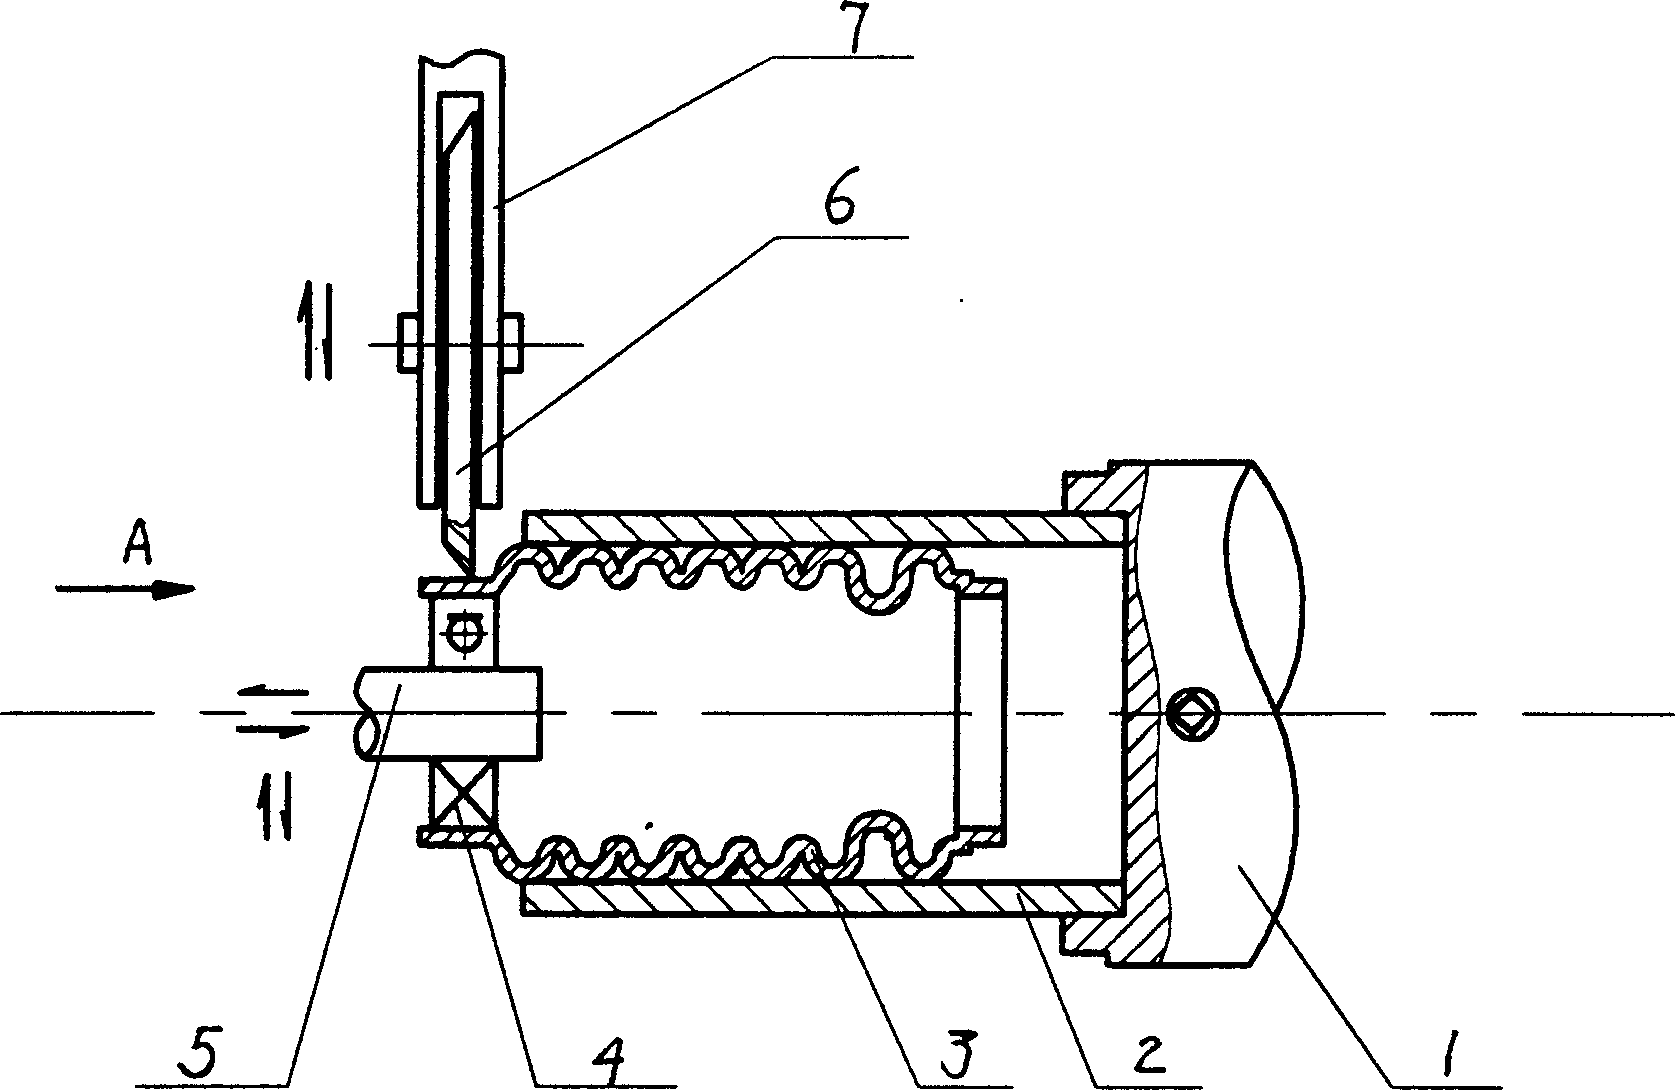 Mfg. method of metal ripple tubes